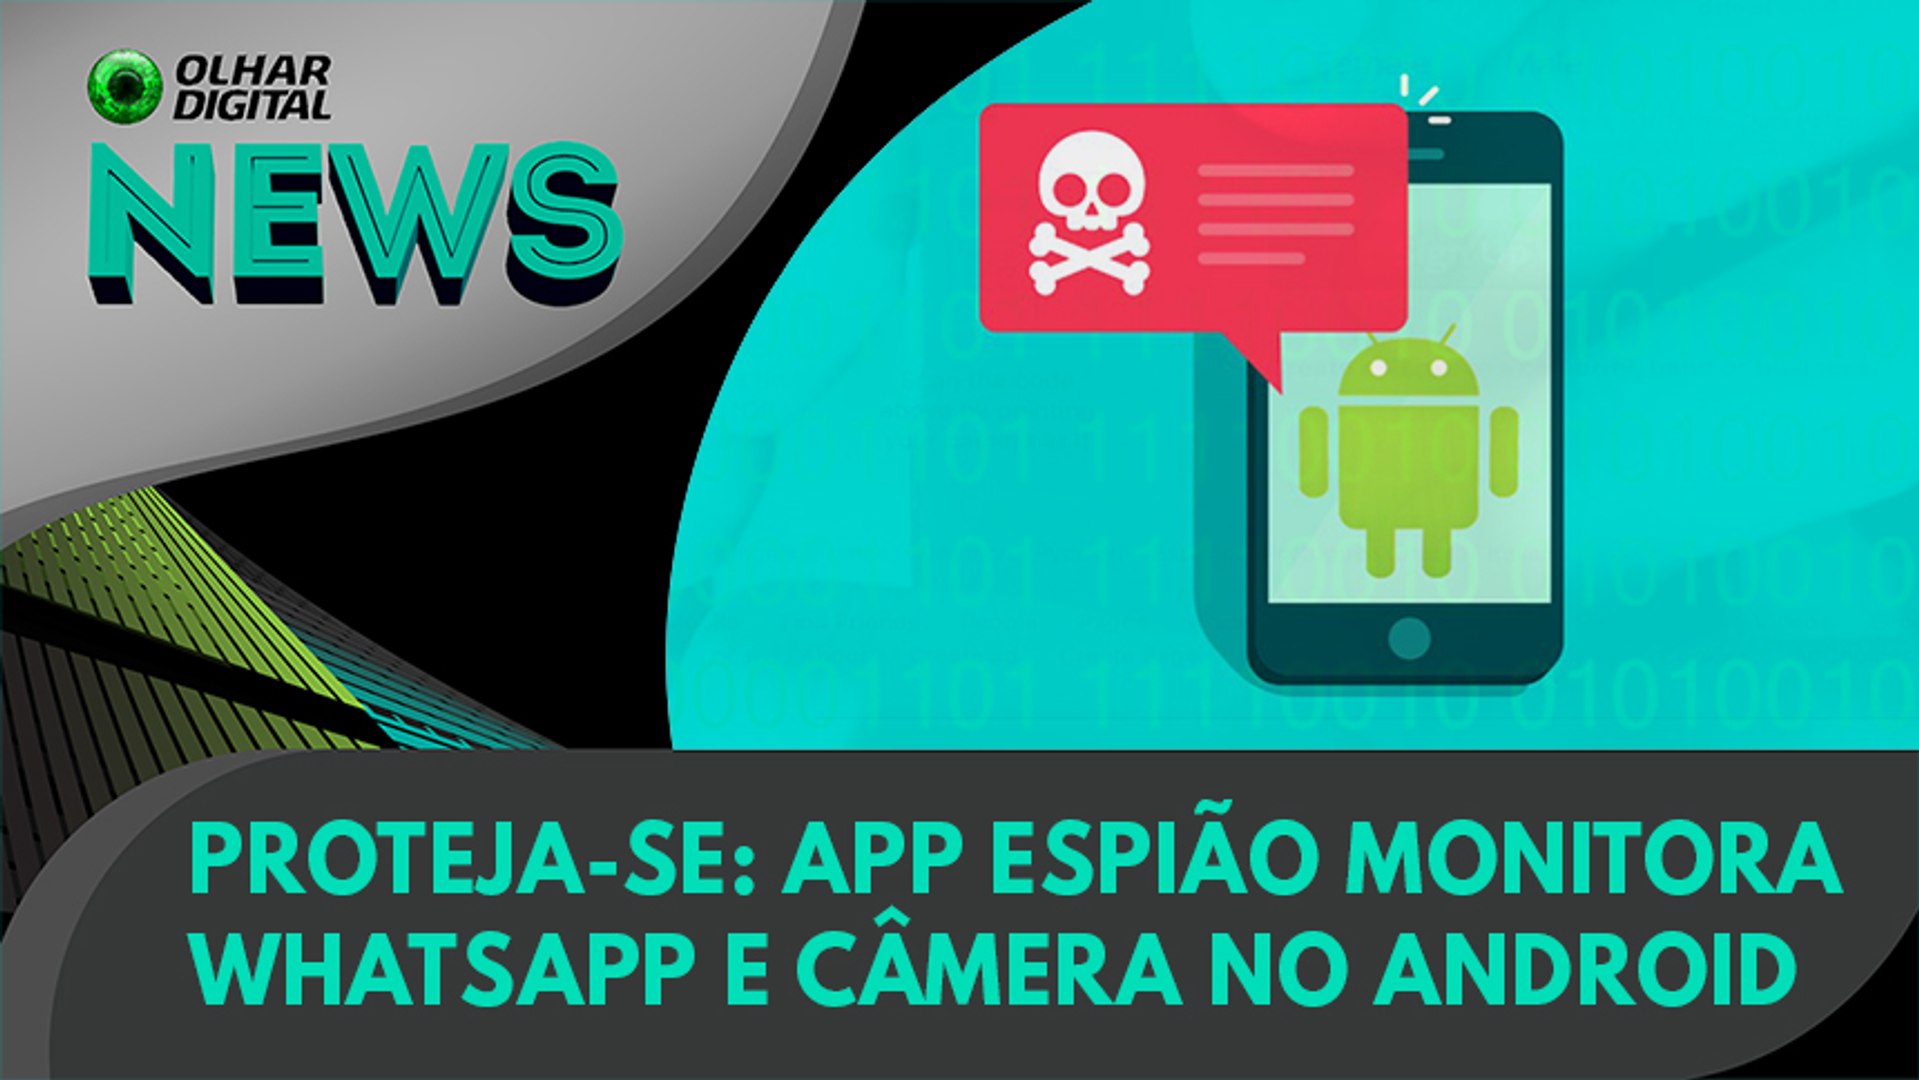 Ao Vivo, Proteja-se: app espião monitora WhatsApp e câmera no Android, 01/04/2021